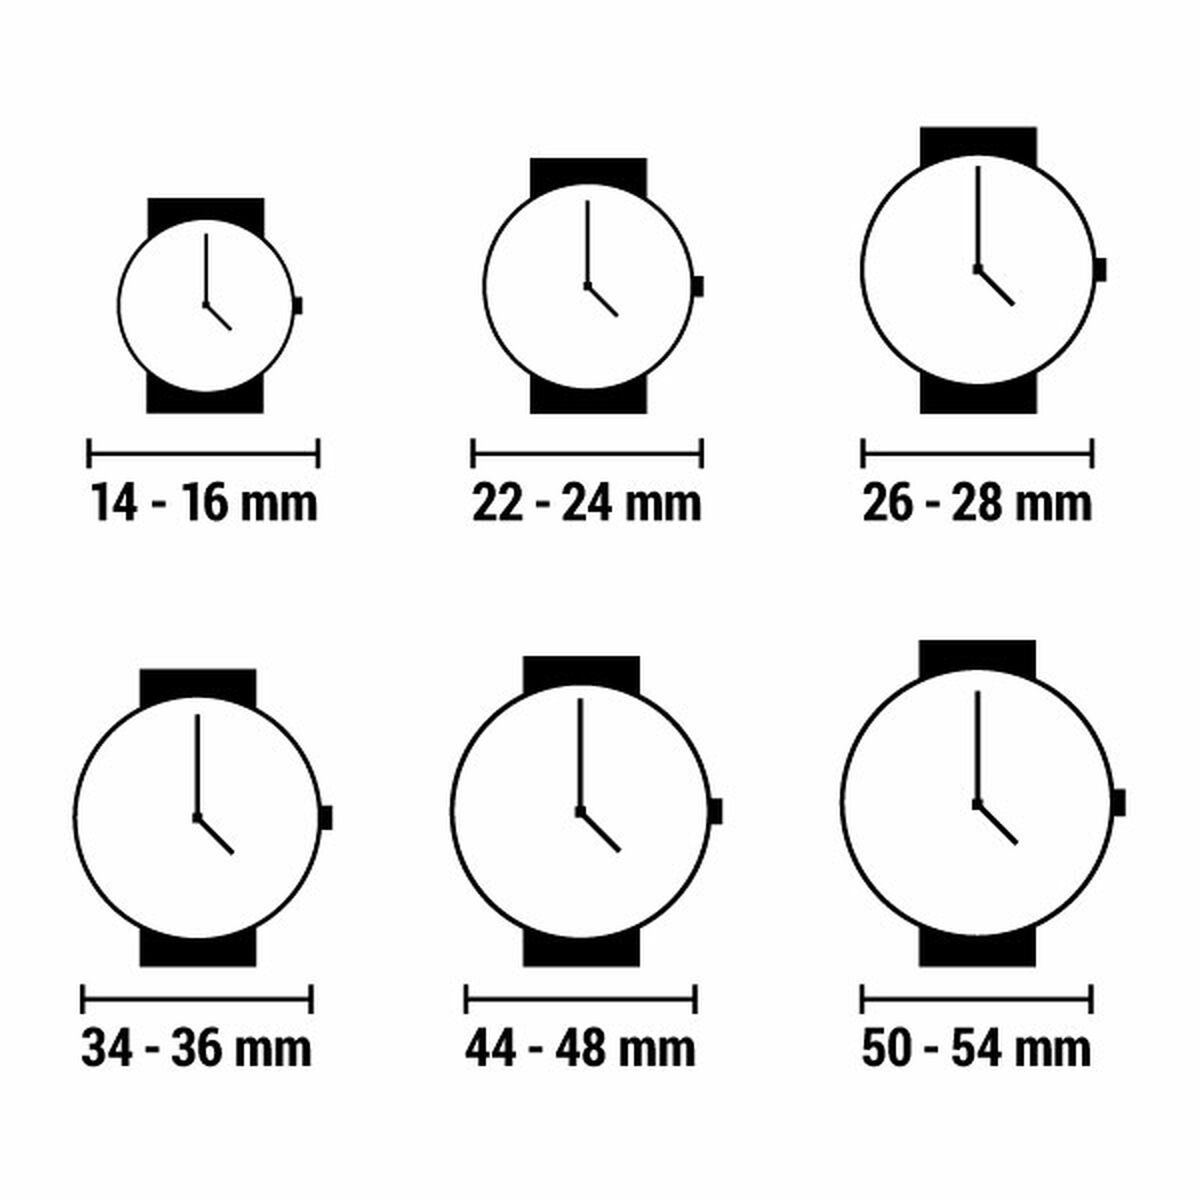 Horloge Dames Esprit ES1L295L0035